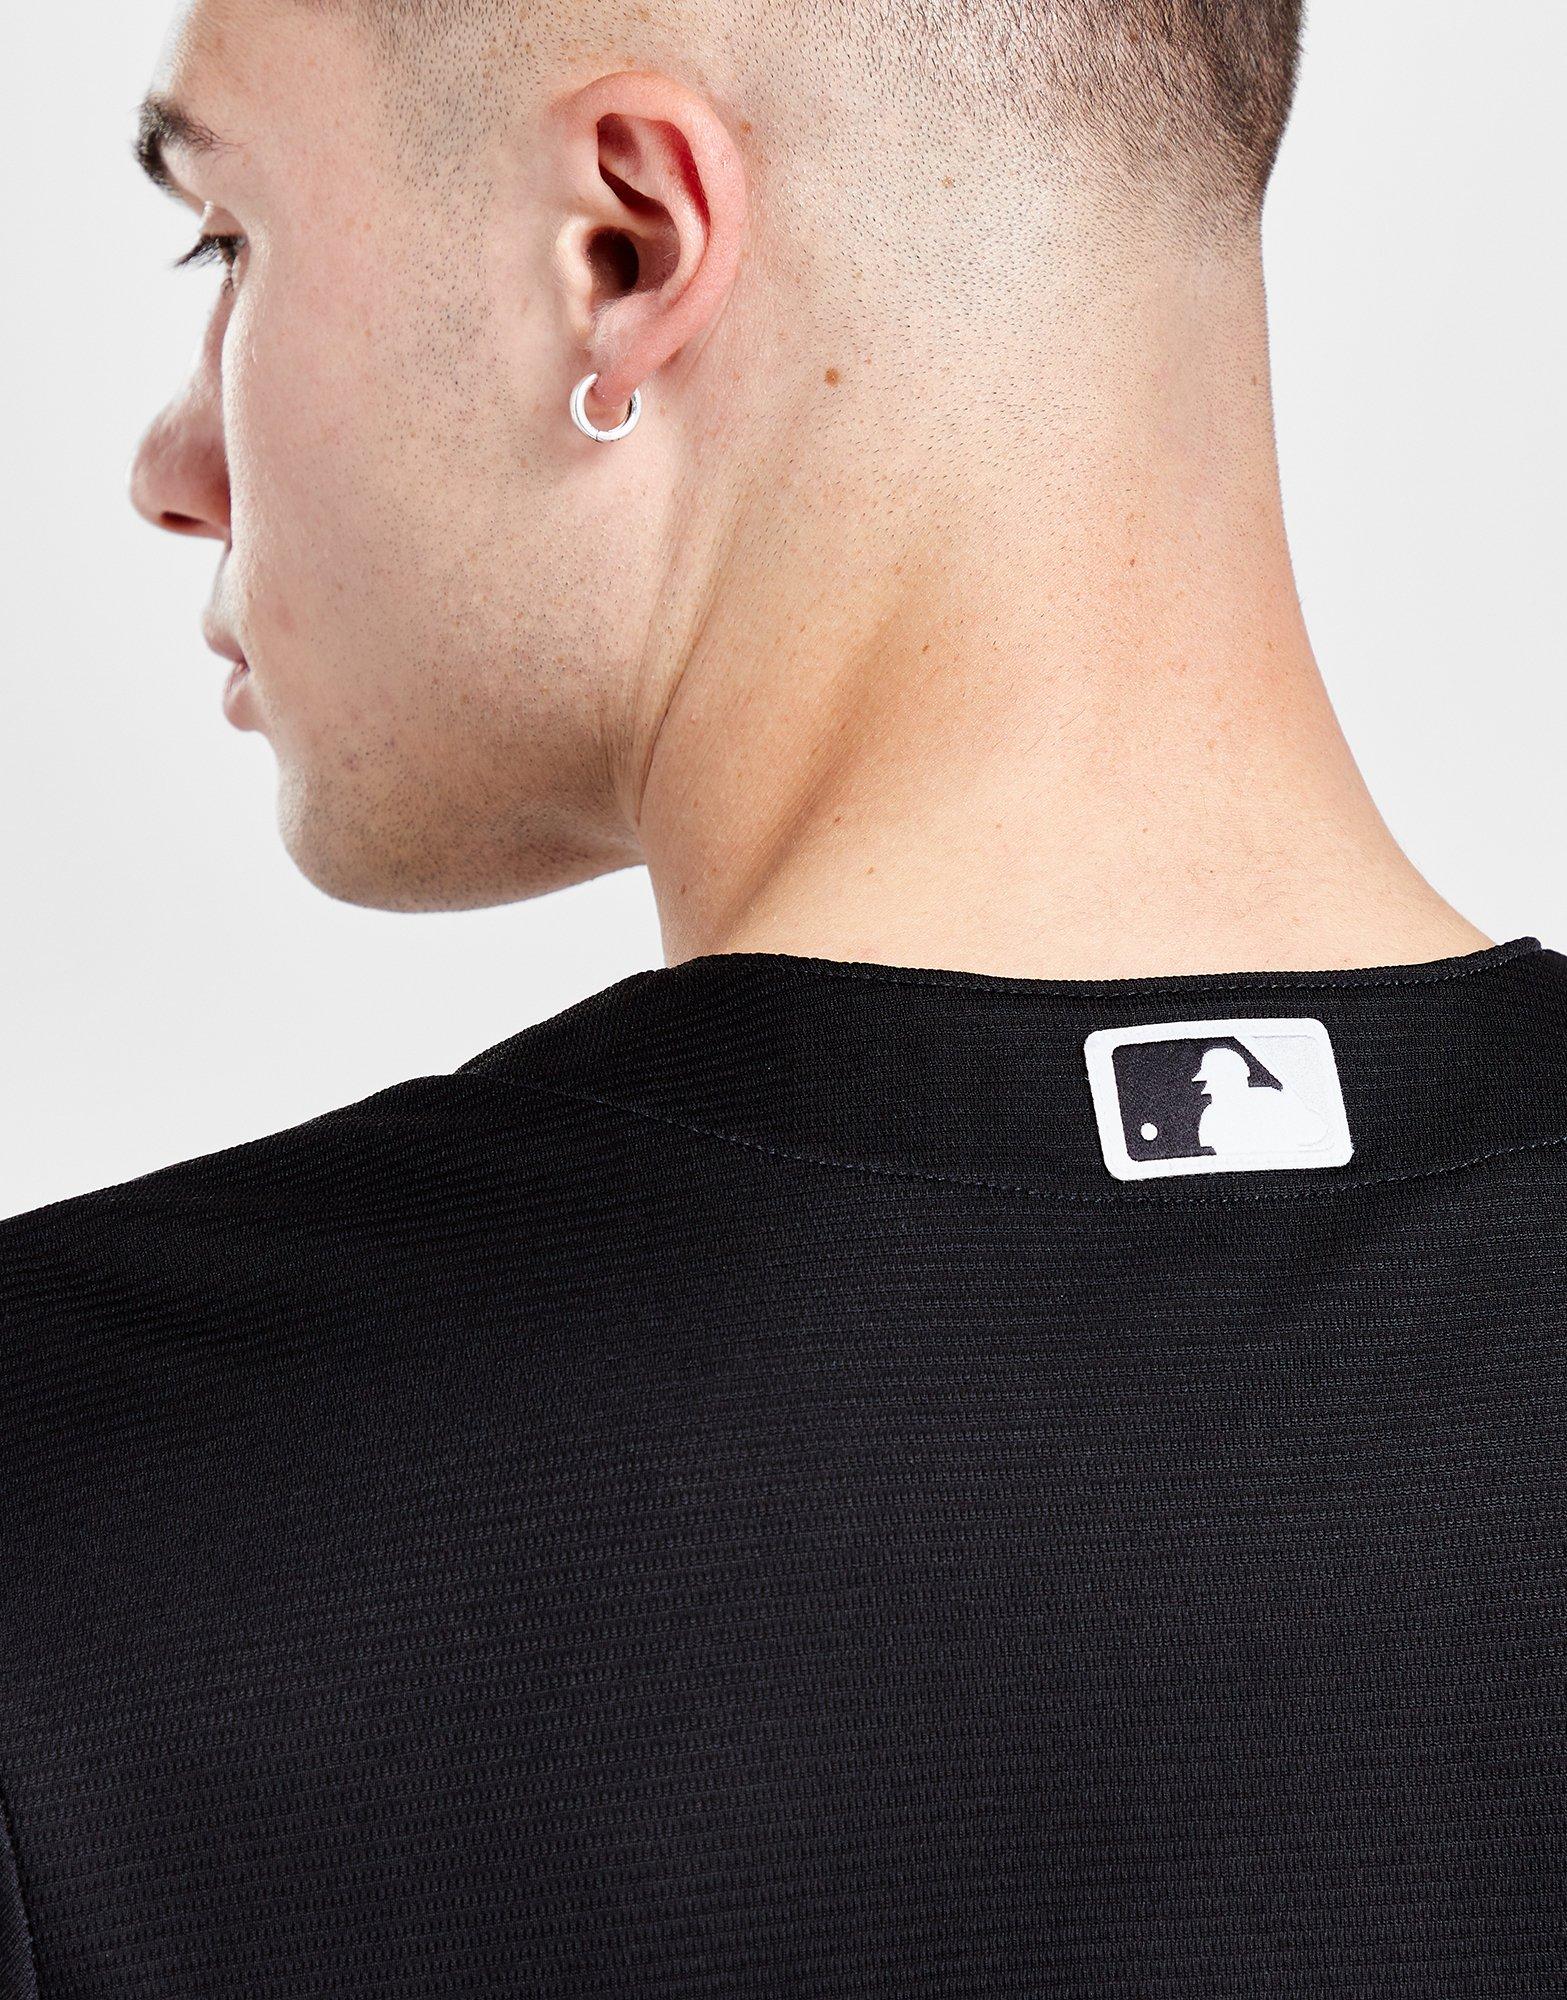 Chemise de Baseball MLB Chicago White Sox Nike Triple Black Jersey